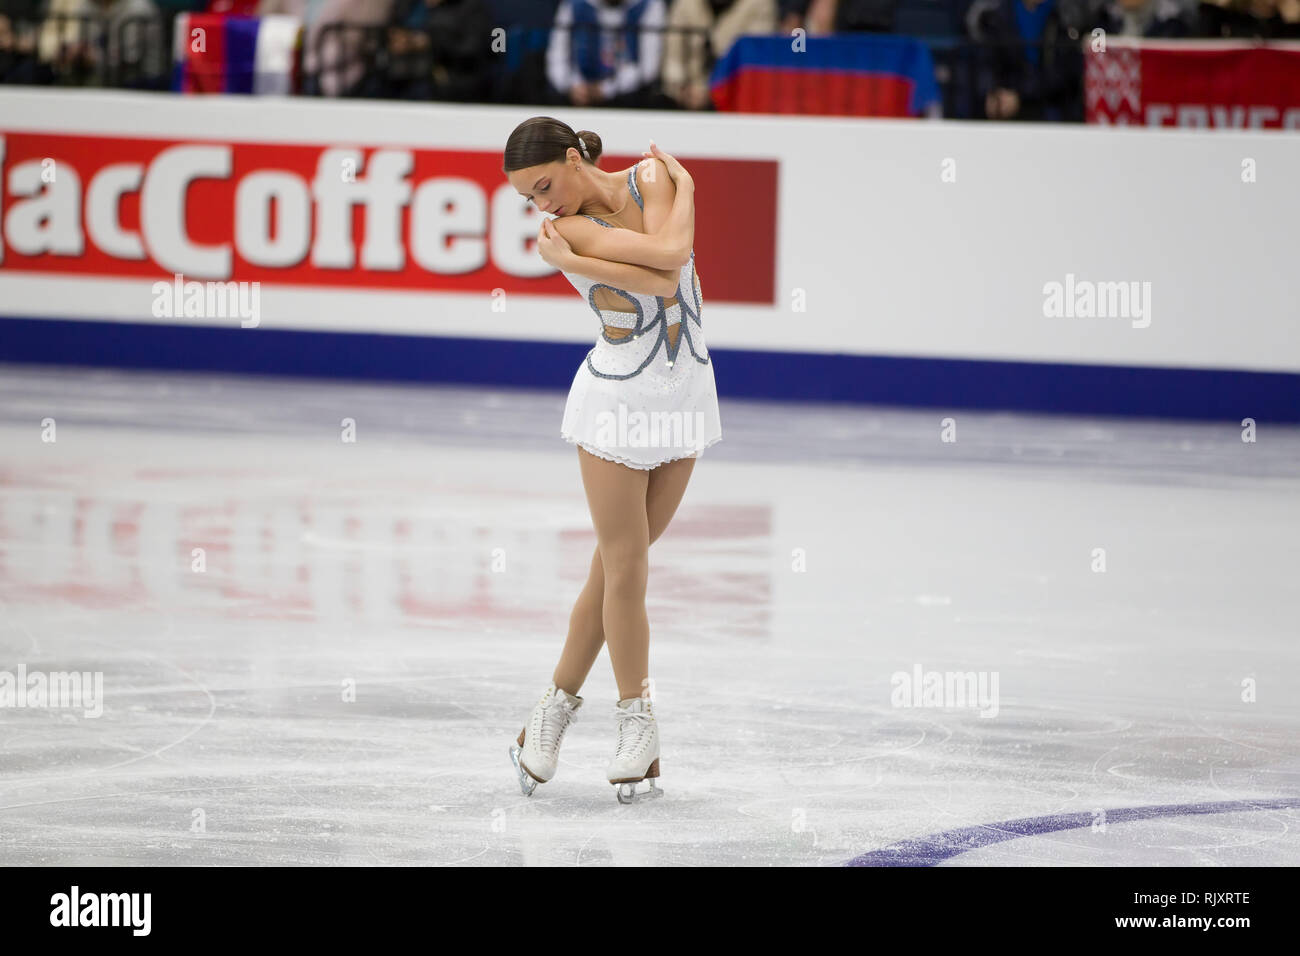 Biélorussie, Minsk, Ice Arena, le 25 janvier 2019. Championnat d'Europe de patinage artistique.La figure skater Natasha Mсkay effectue programme libre Banque D'Images